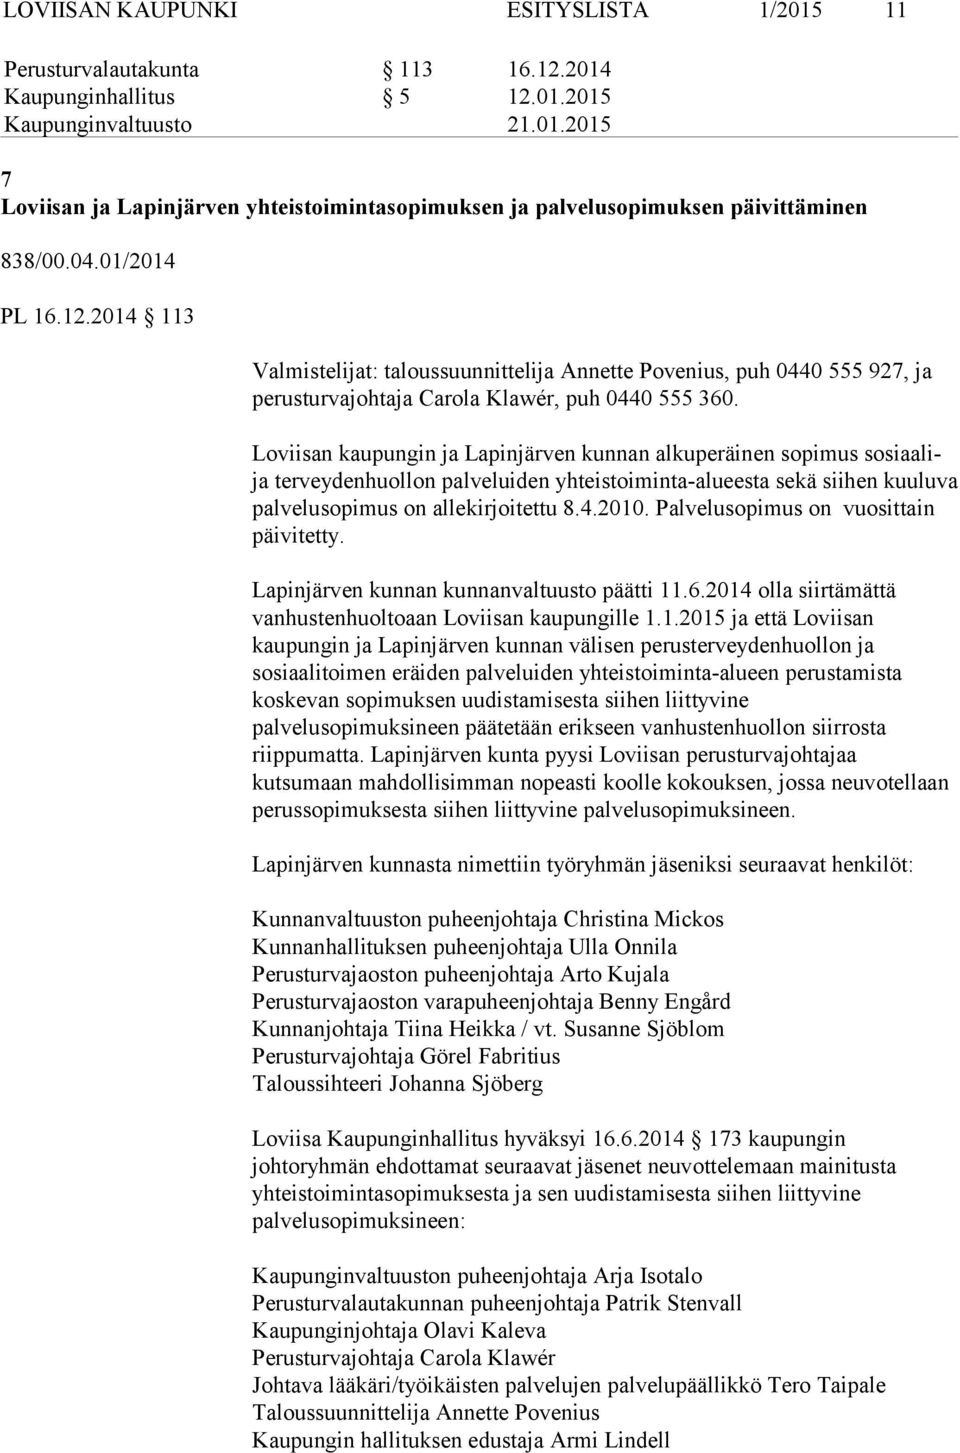 Loviisan kaupungin ja Lapinjärven kunnan alkuperäinen sopimus sosiaalija terveydenhuollon palveluiden yhteistoiminta-alueesta sekä siihen kuuluva palvelusopimus on allekirjoitettu 8.4.2010.